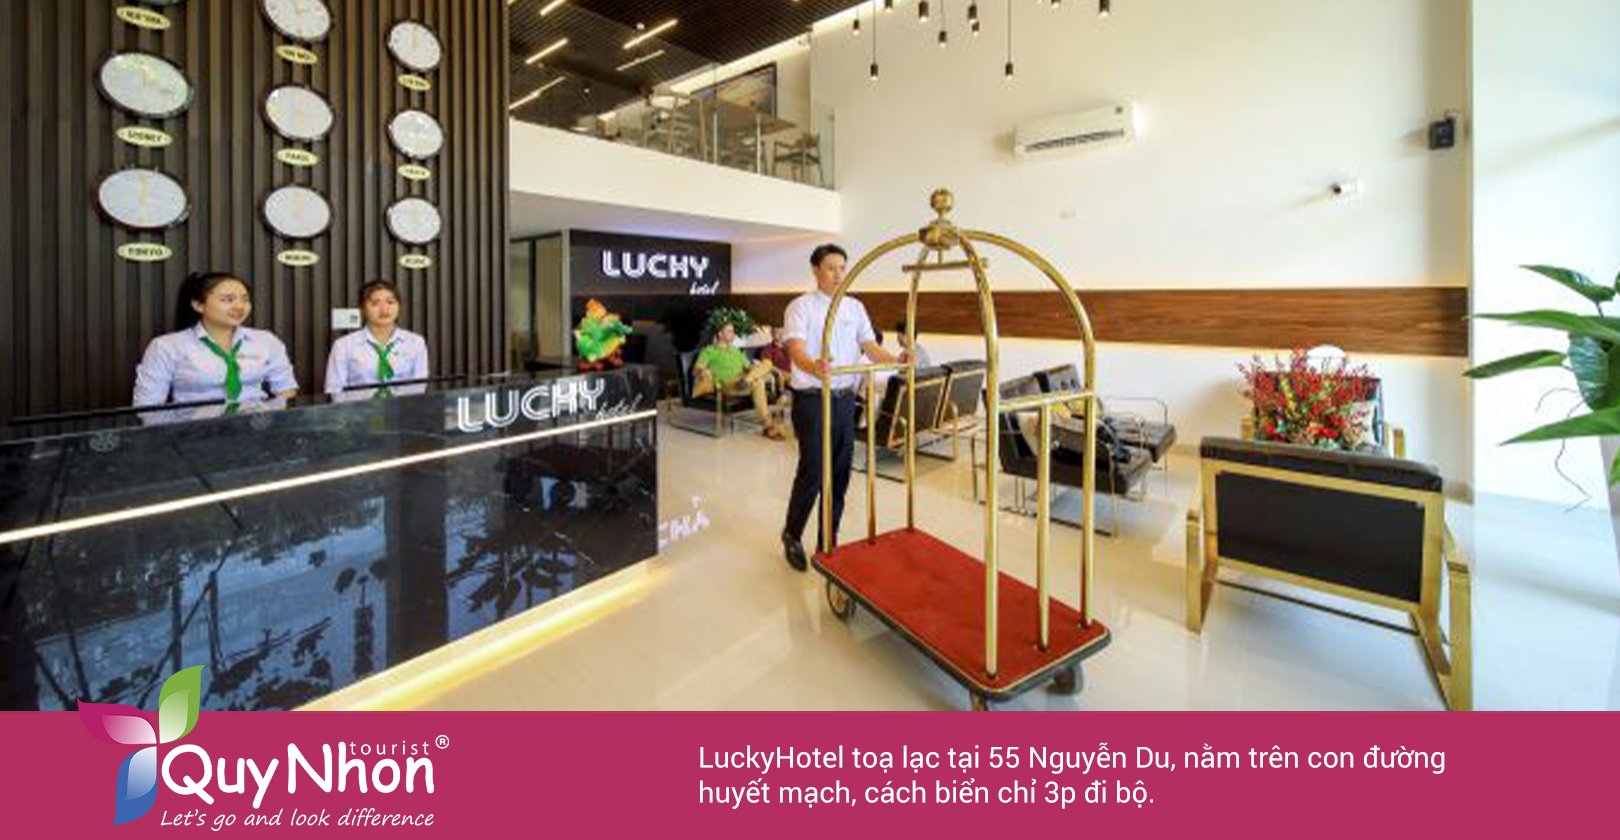 Lucky Hotel: Mang sự thoải mái cho những chuyến ghé thăm